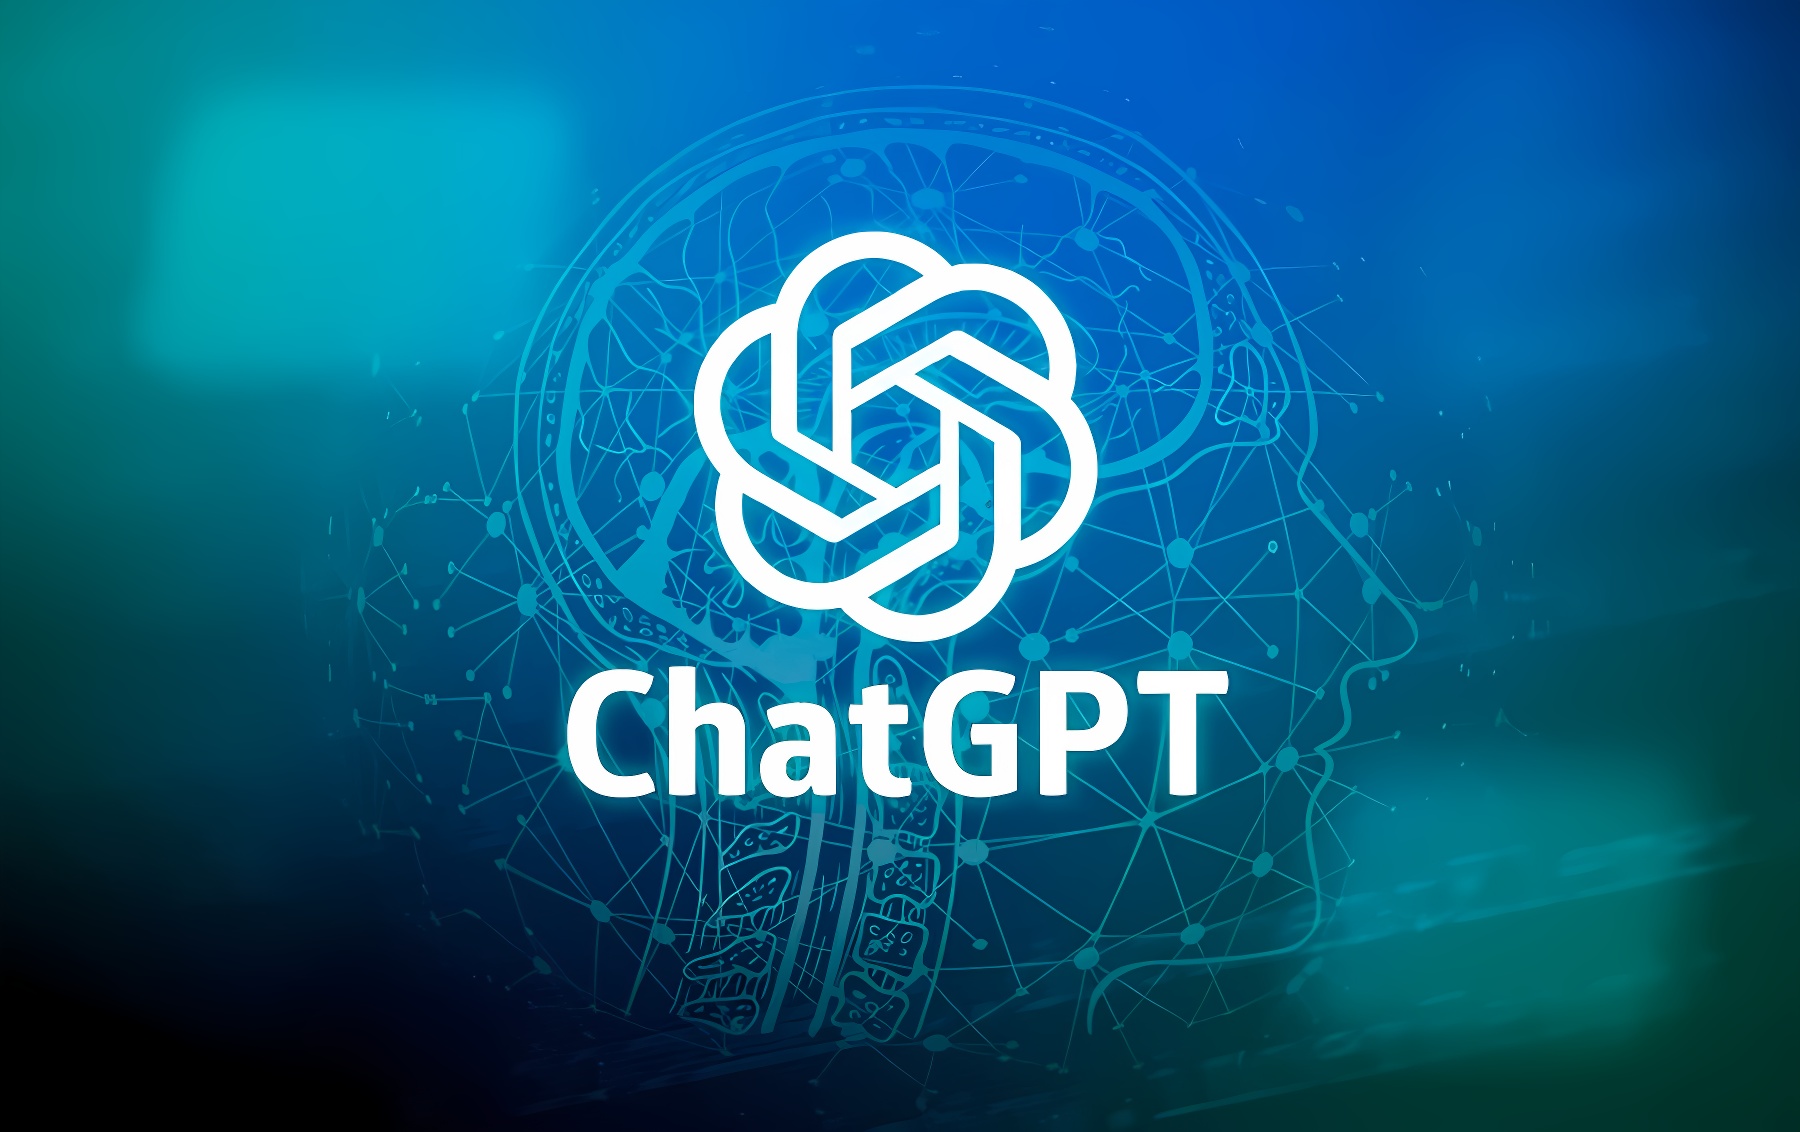 这是一张展示ChatGPT标志的图片，背景为蓝色调，包含数字化元素和线条，整体给人科技感。